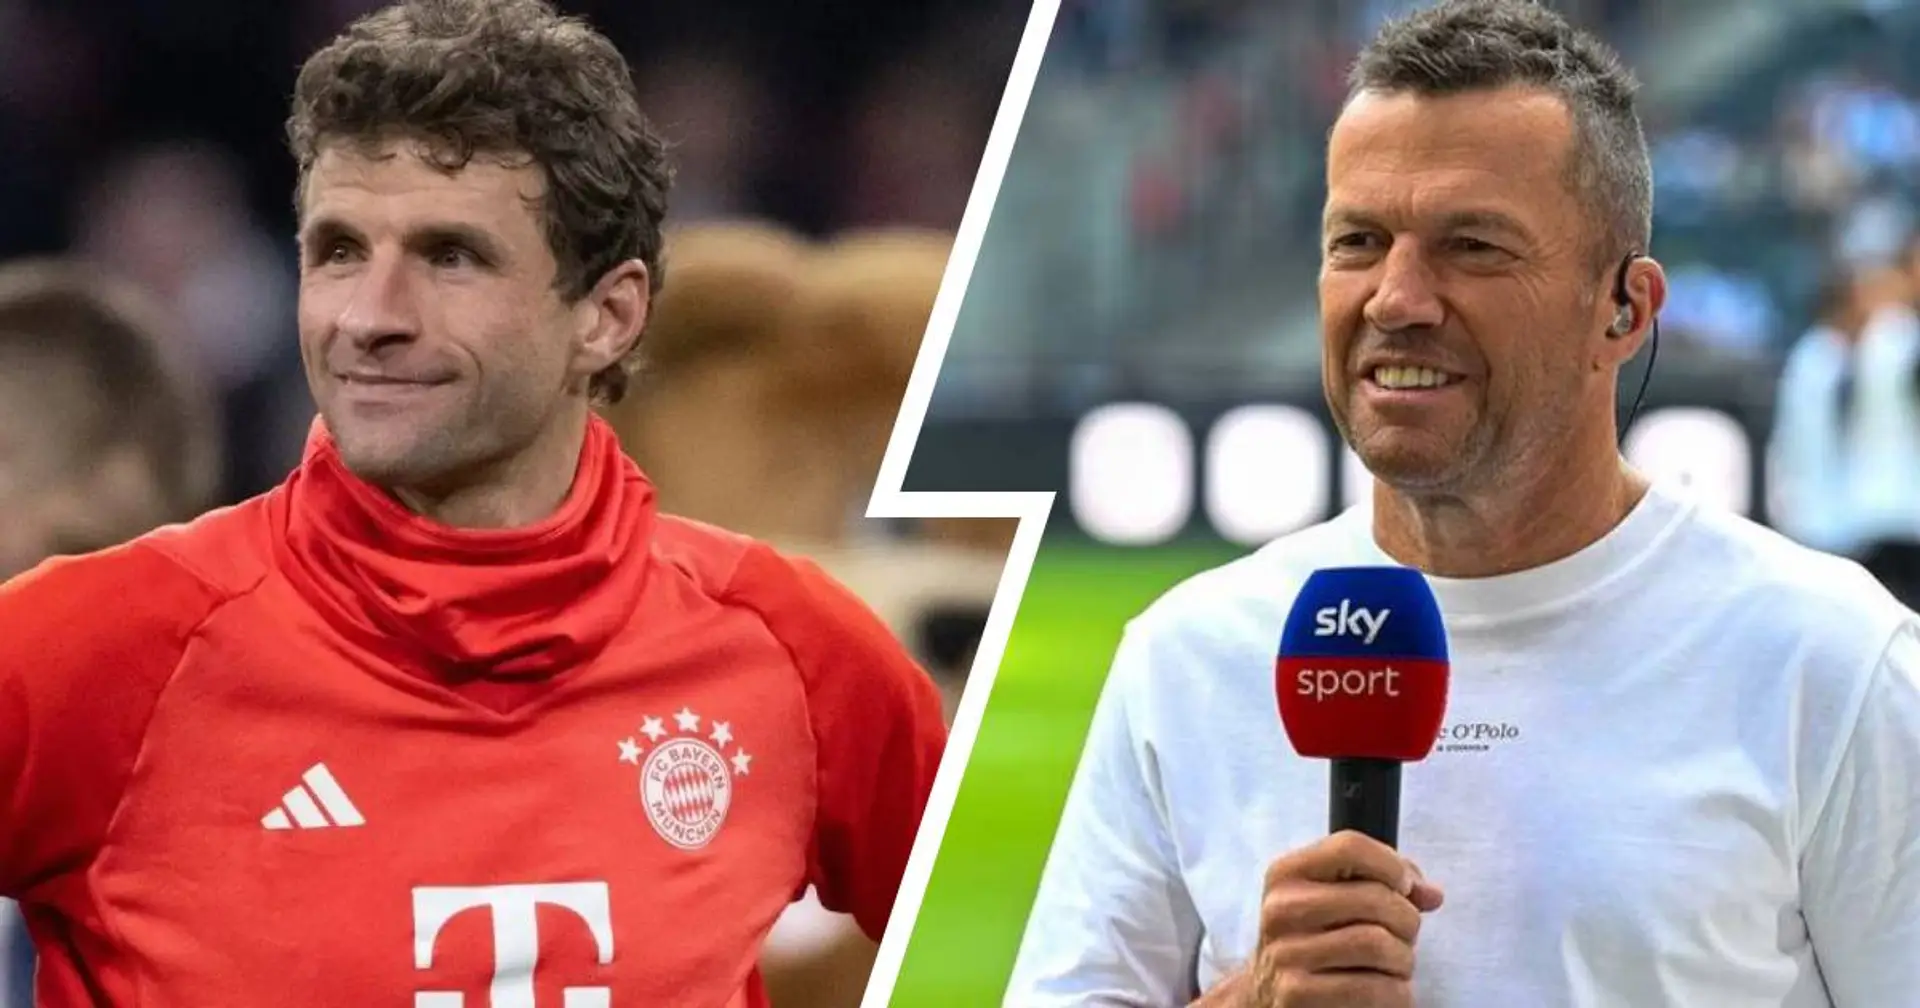 Matthäus fordert Startelf-Einsatz von Müller gegen Leverkusen: "Für mich muss er spielen"